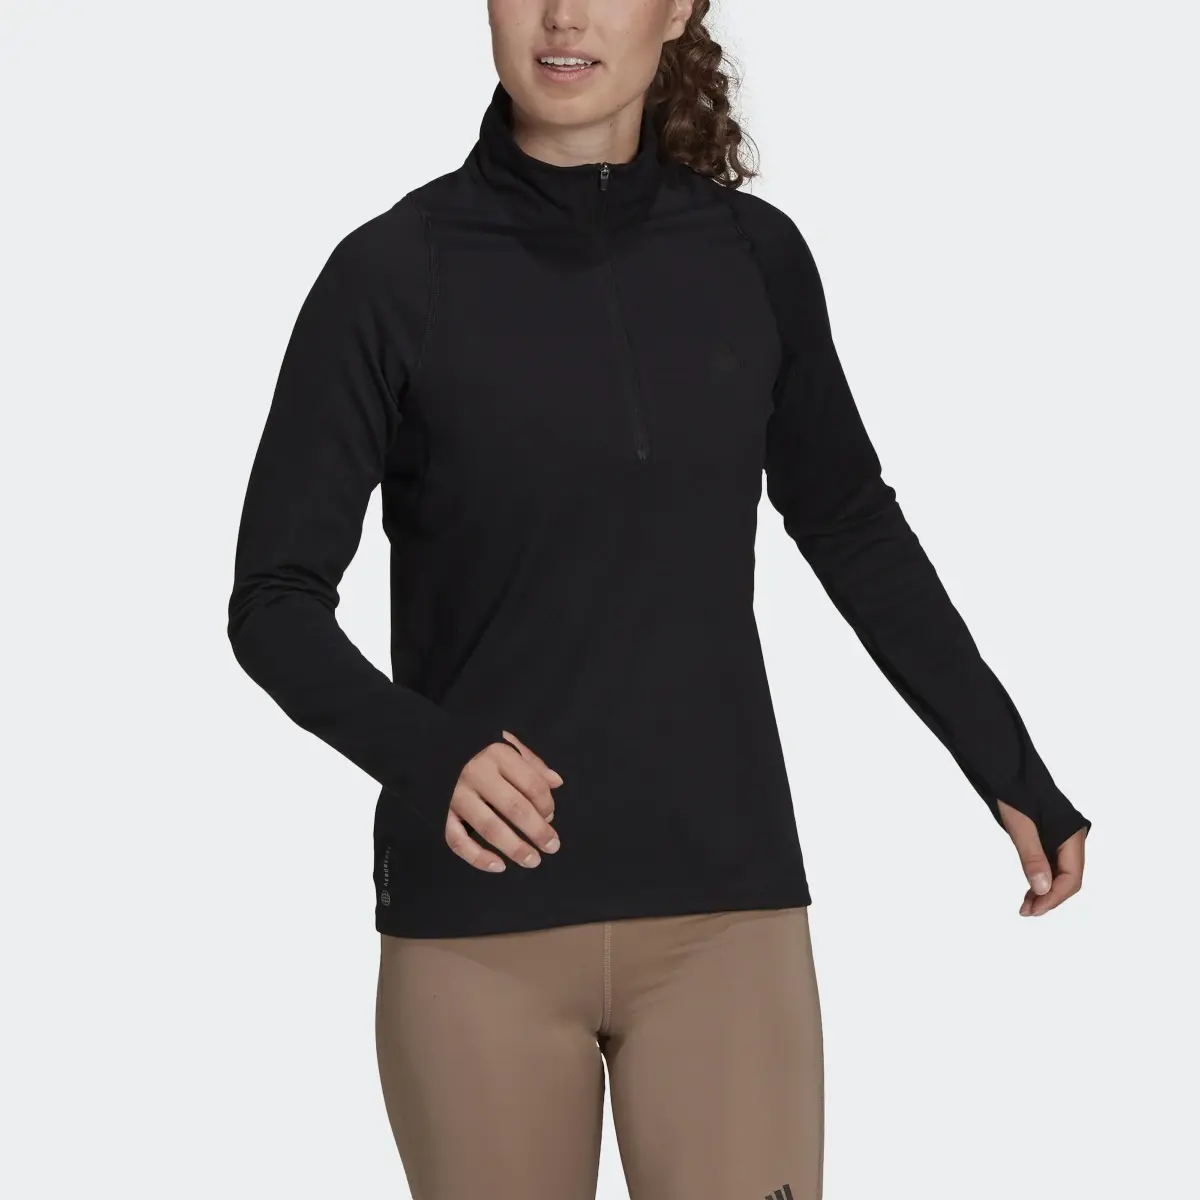 Adidas Run Fast Half-Zip Long Sleeve Sweatshirt. 1